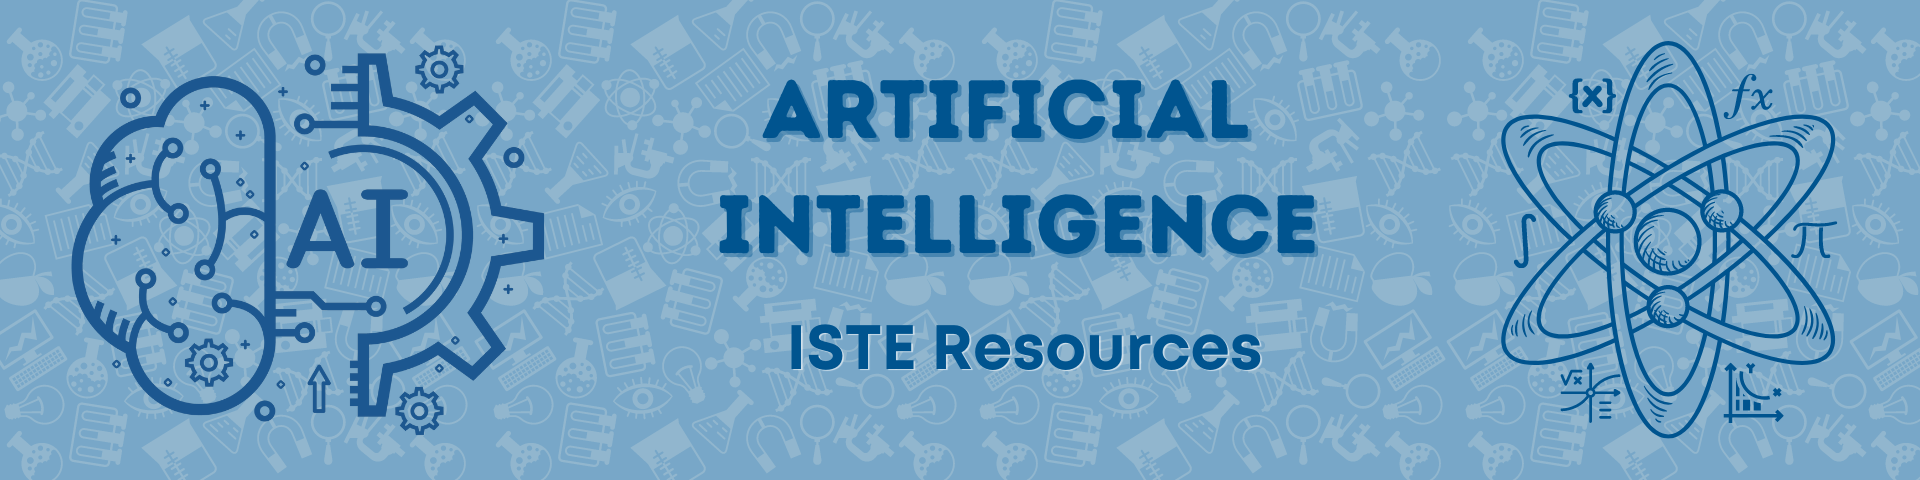 AI ISTE Resources Header